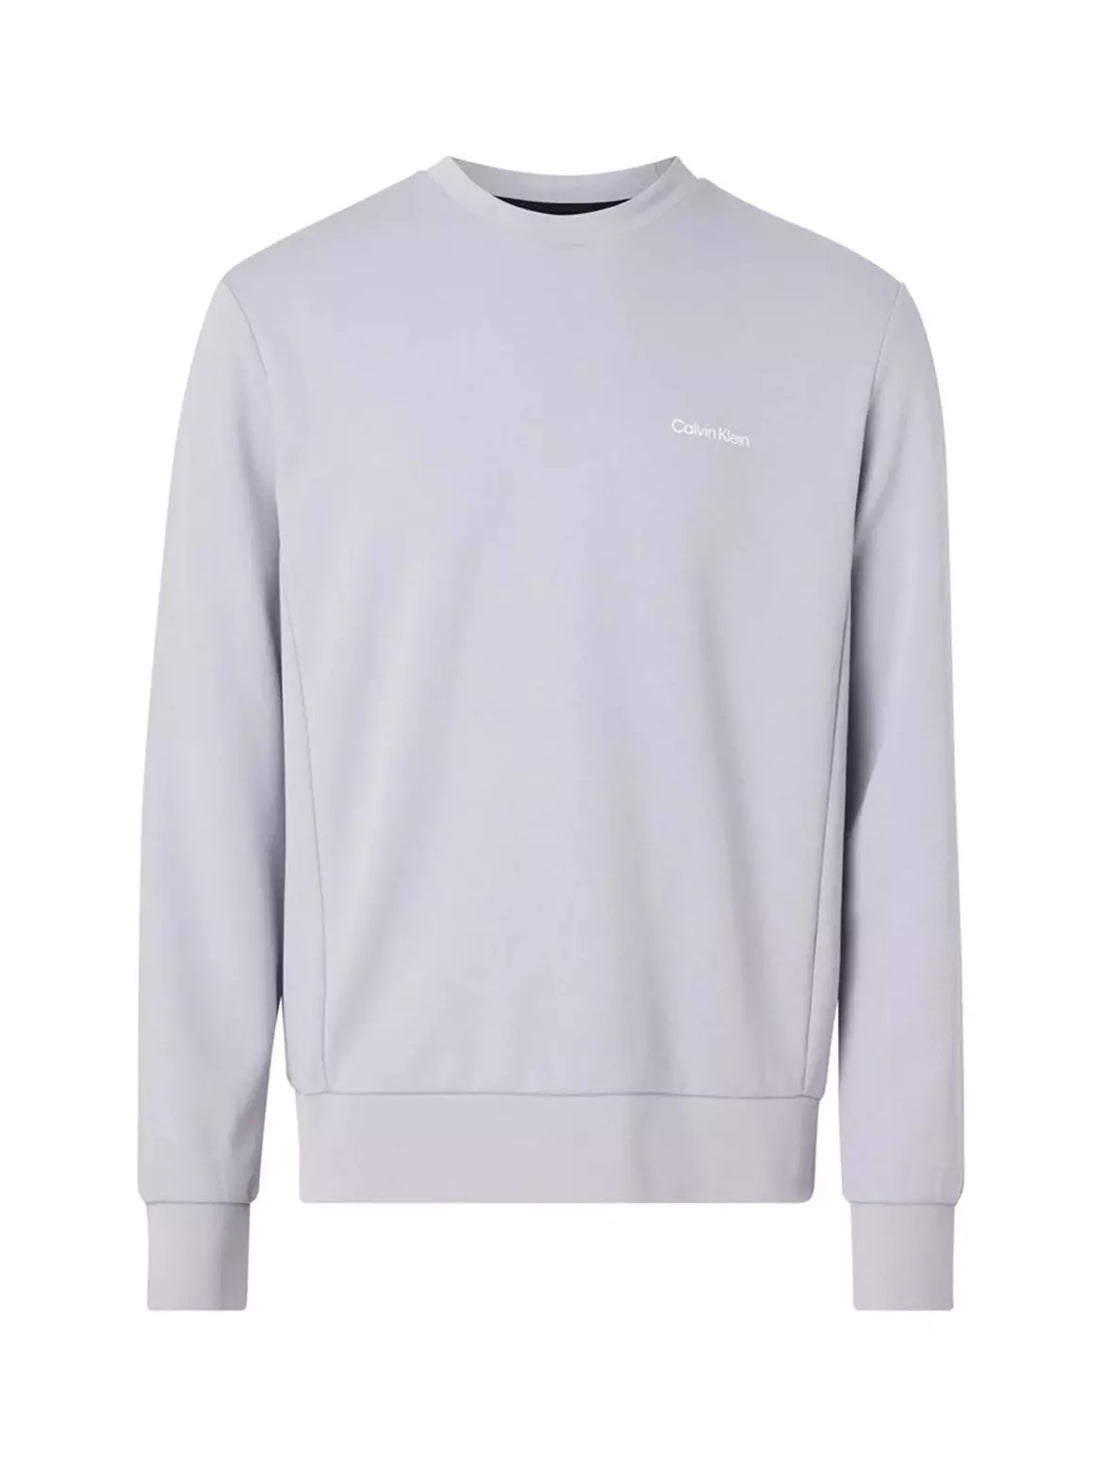 Micro logo repreve sweater - Dapple gray